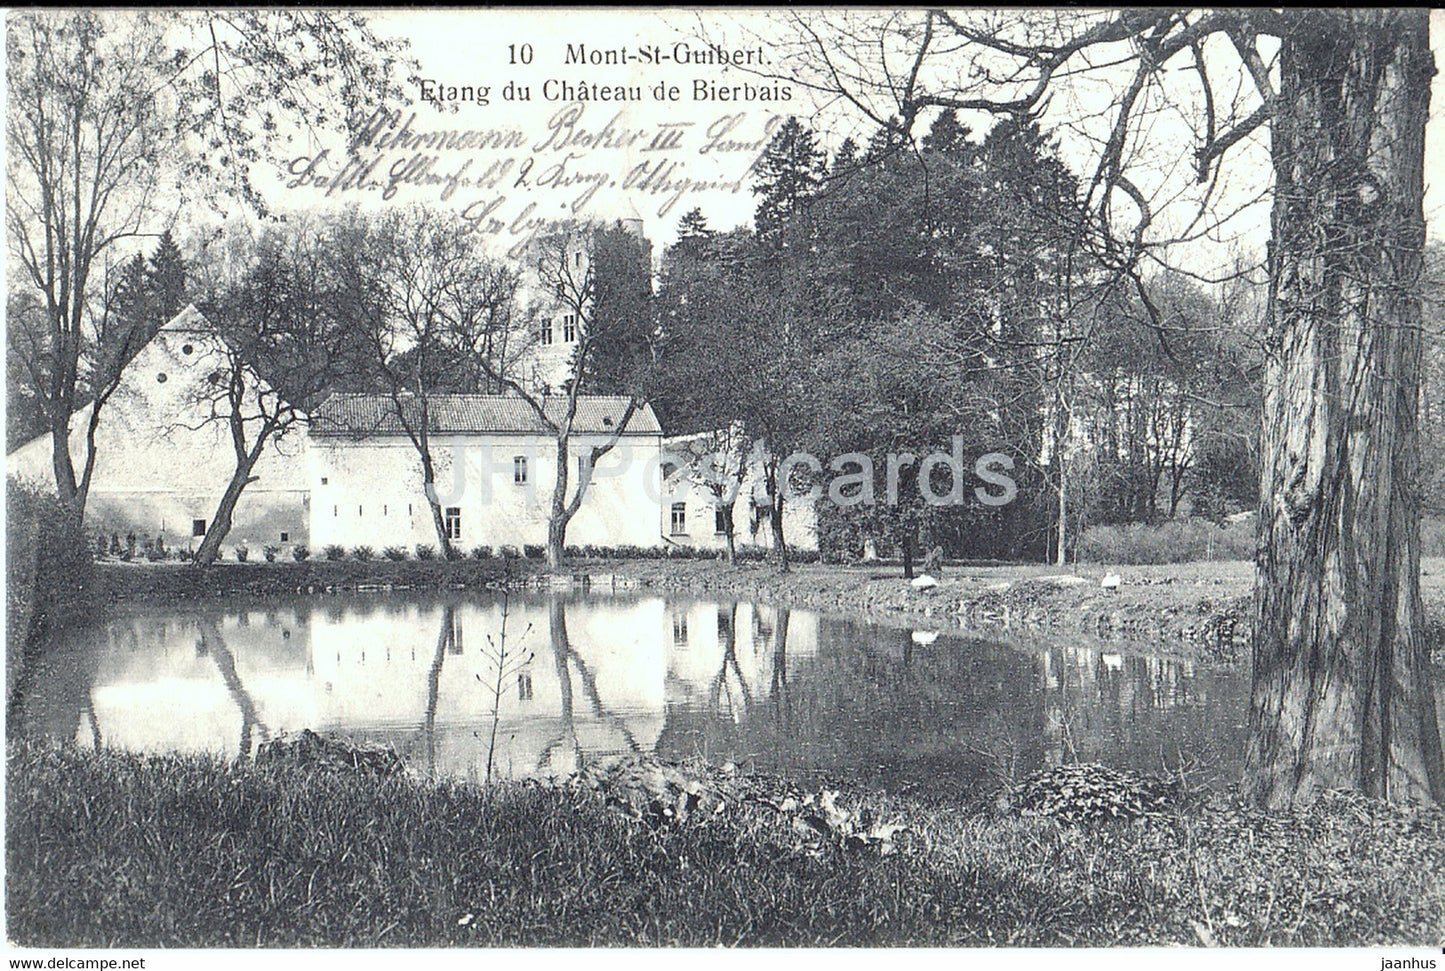 Mont St Guibert - Etang du Chateau de Bierbais - castle - Landsturm - Feldpost - old postcard - 1915 - Belgium - used - JH Postcards